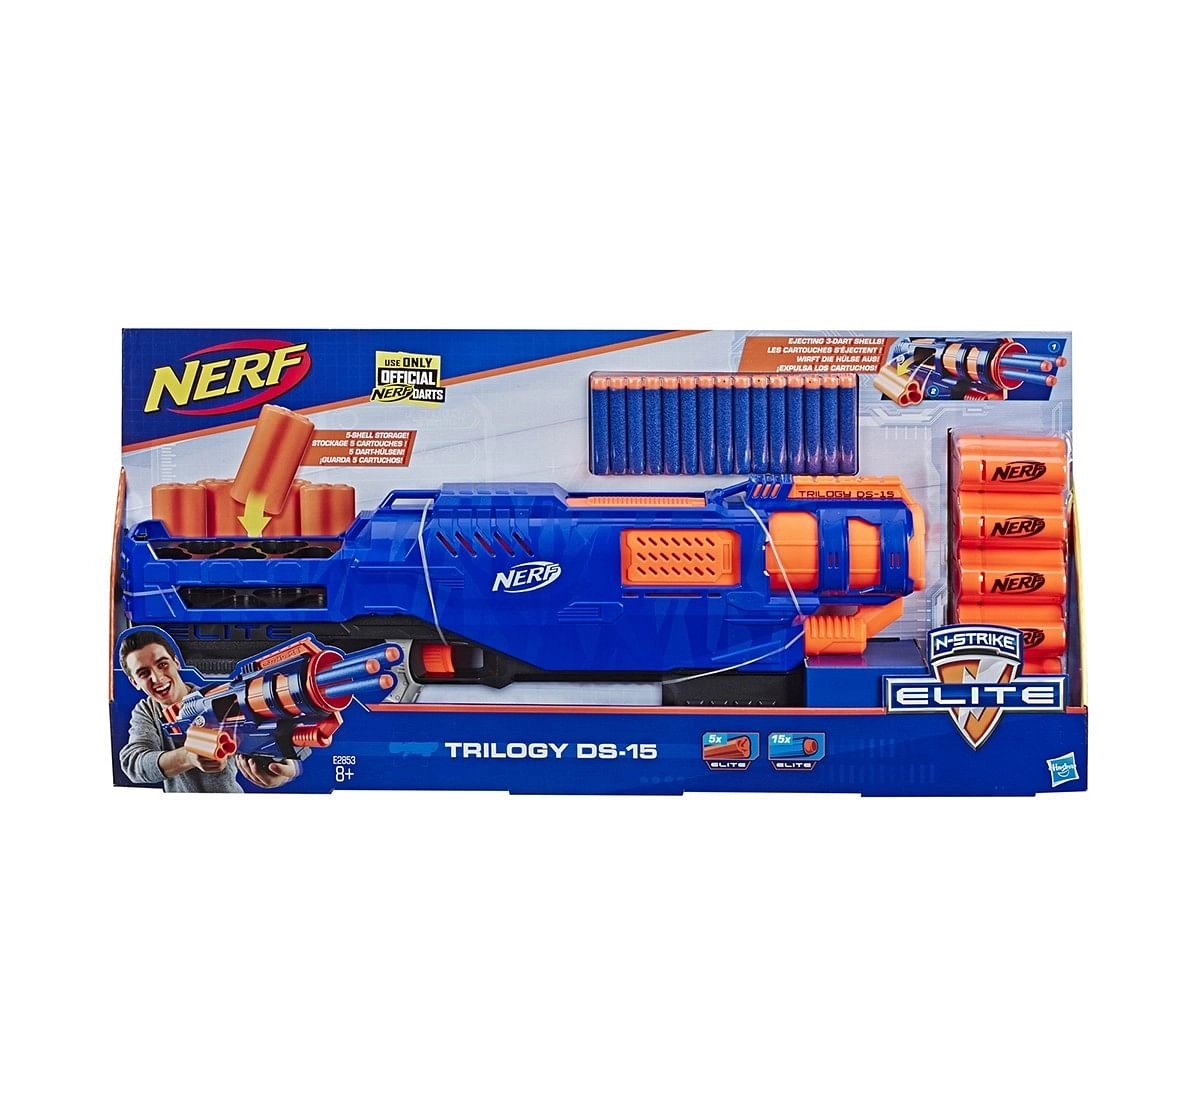 Nerf N-Strike Elite Toy Blaster Trilogy Blasters for Kids age 8Y+ 